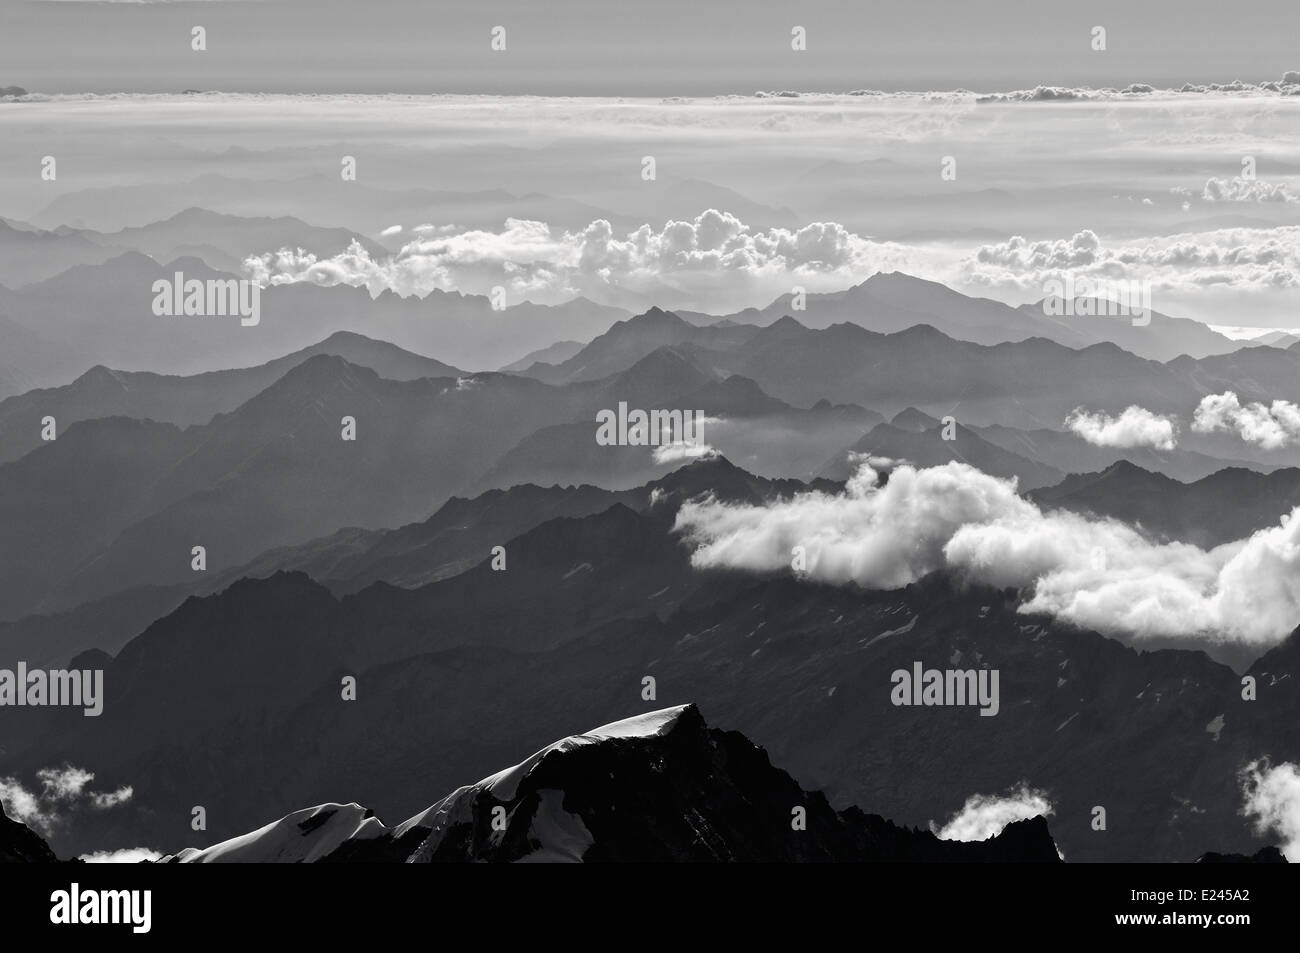 Haze in mountain valleys, Italian Alps Stock Photo